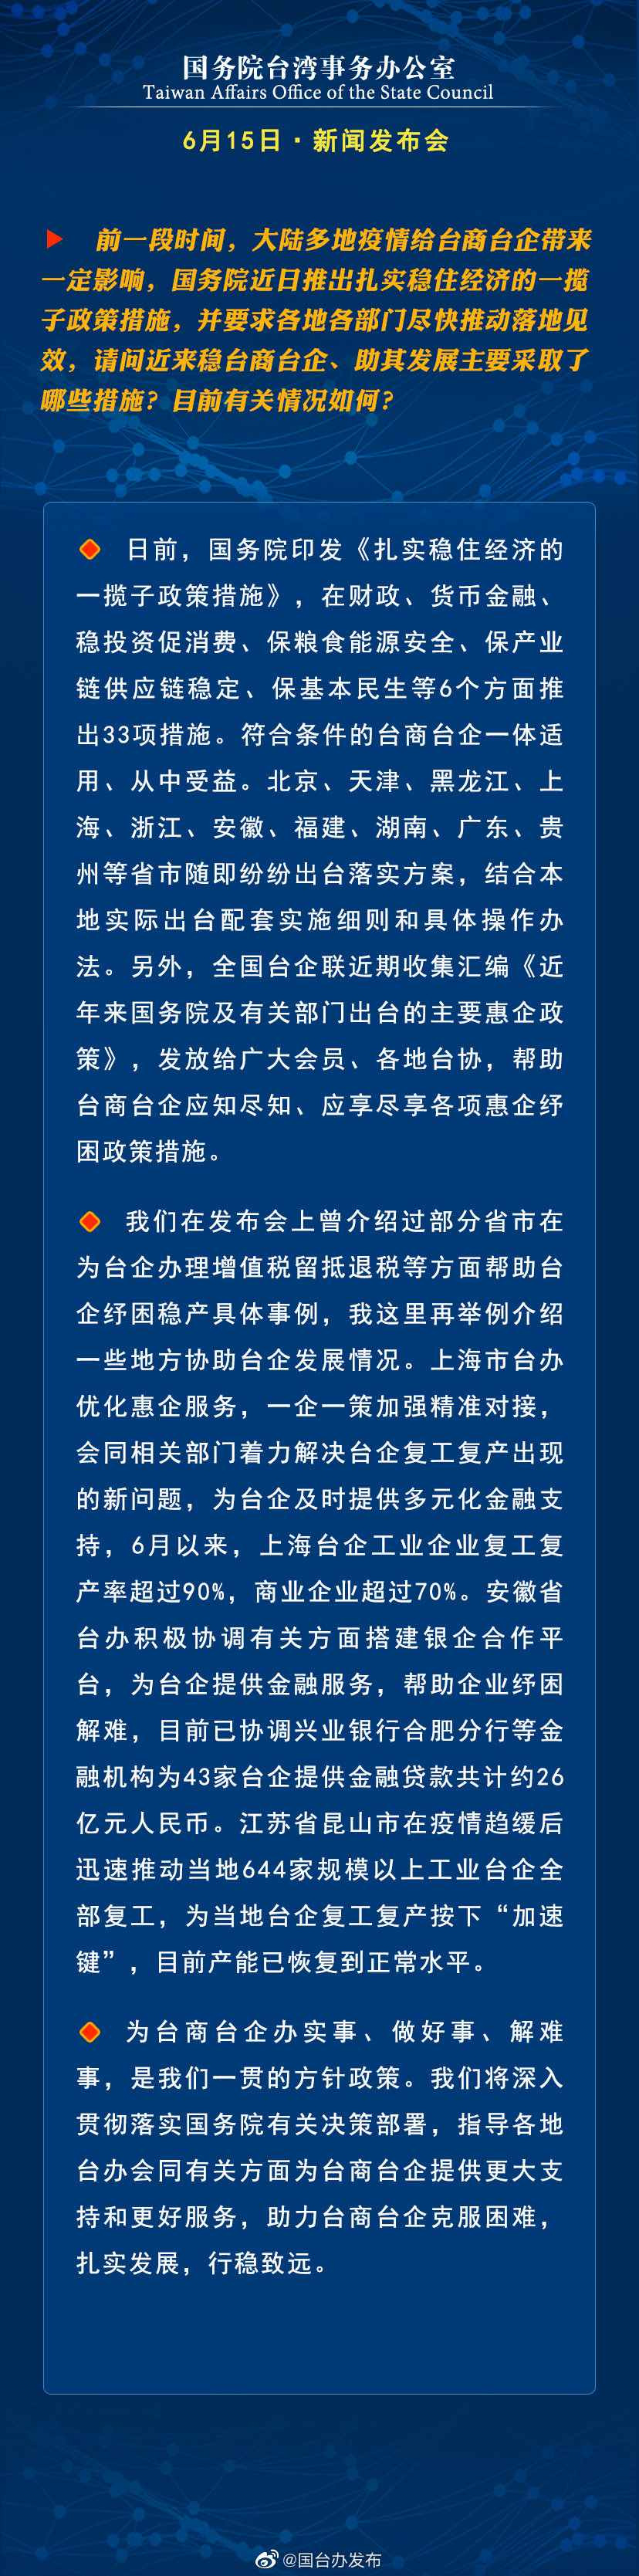 国务院台湾事务办公室6月15日·新闻发布会